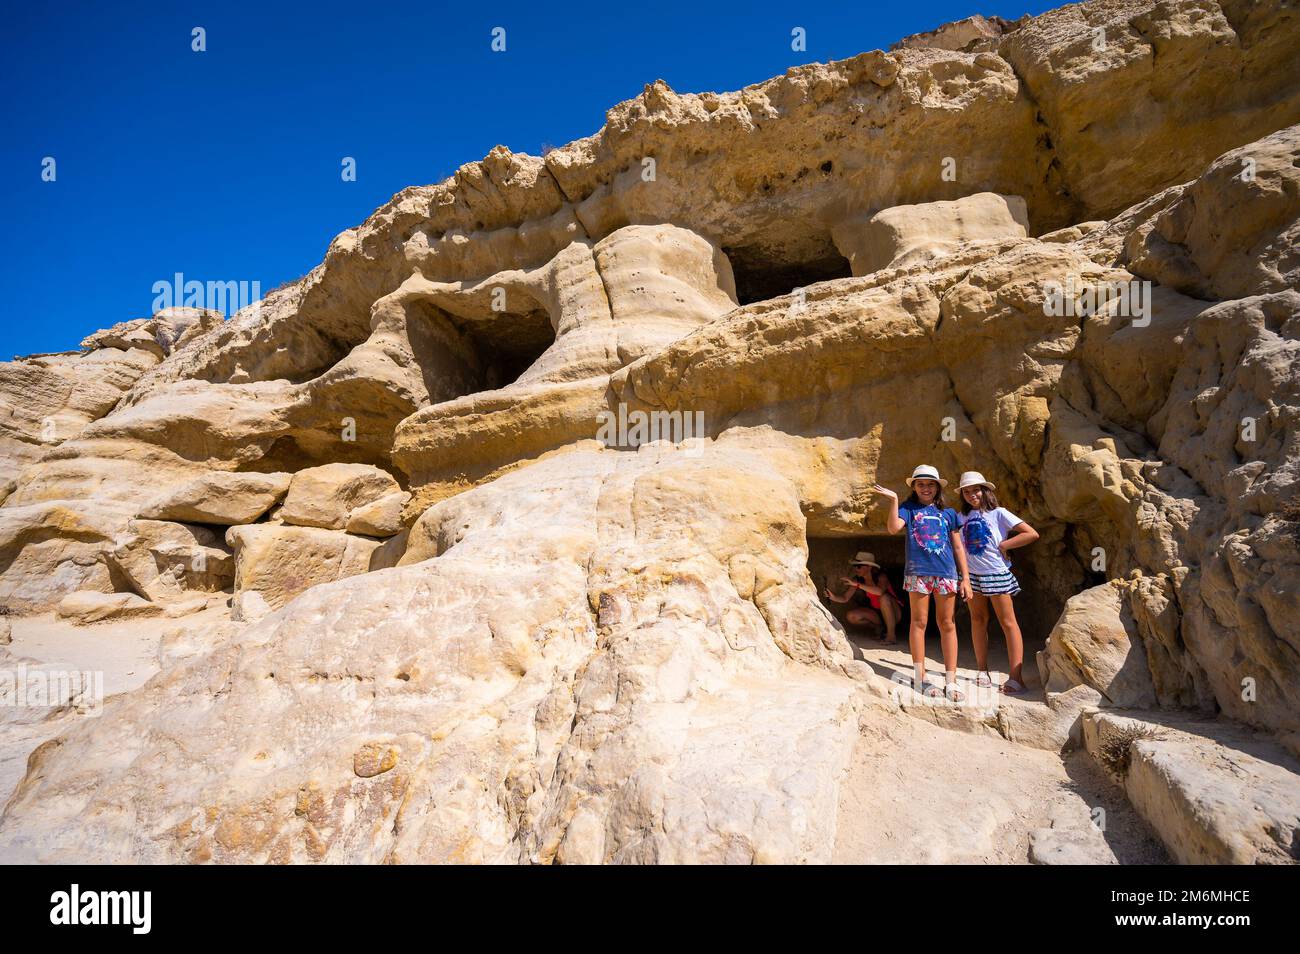 Célèbre plage de Matala avec des grottes, connue pour les hippies dans les années 70. Vue sur les grottes rocheuses, autrefois cimetière romain, dans la célèbre plage grecque de Matala, Crète, Grèce. Banque D'Images